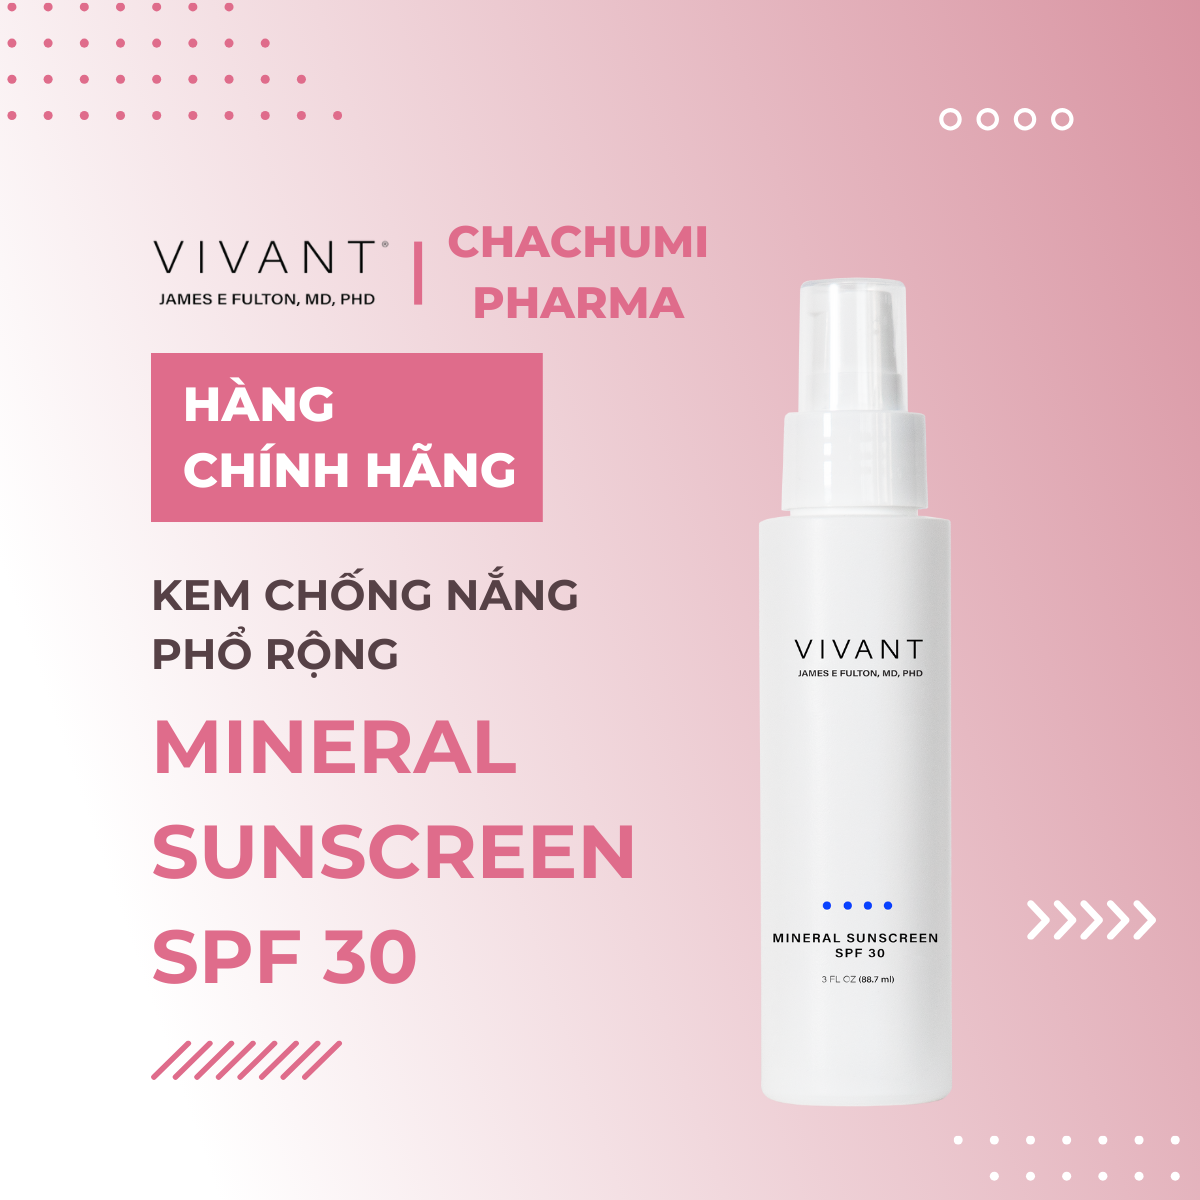 Vivant Mineral Sunscreen SPF 30 - Kem chống nắng phổ rộng